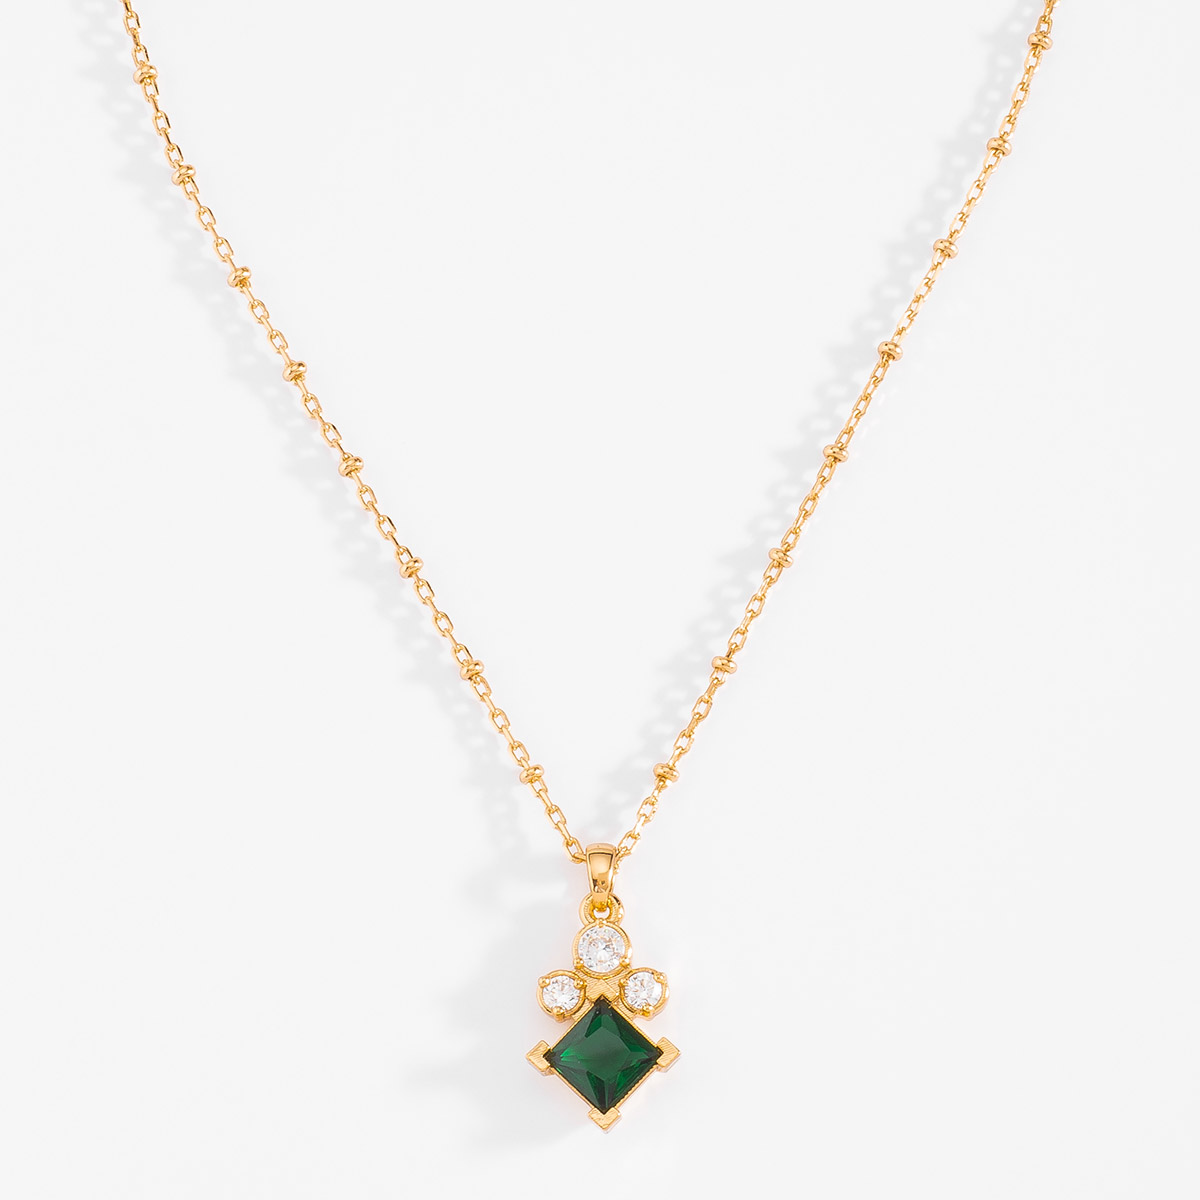 Collar de 42 cm más 10 cm de extensión en baño de oro con piedra diamonice en tono cristal y esmeralda